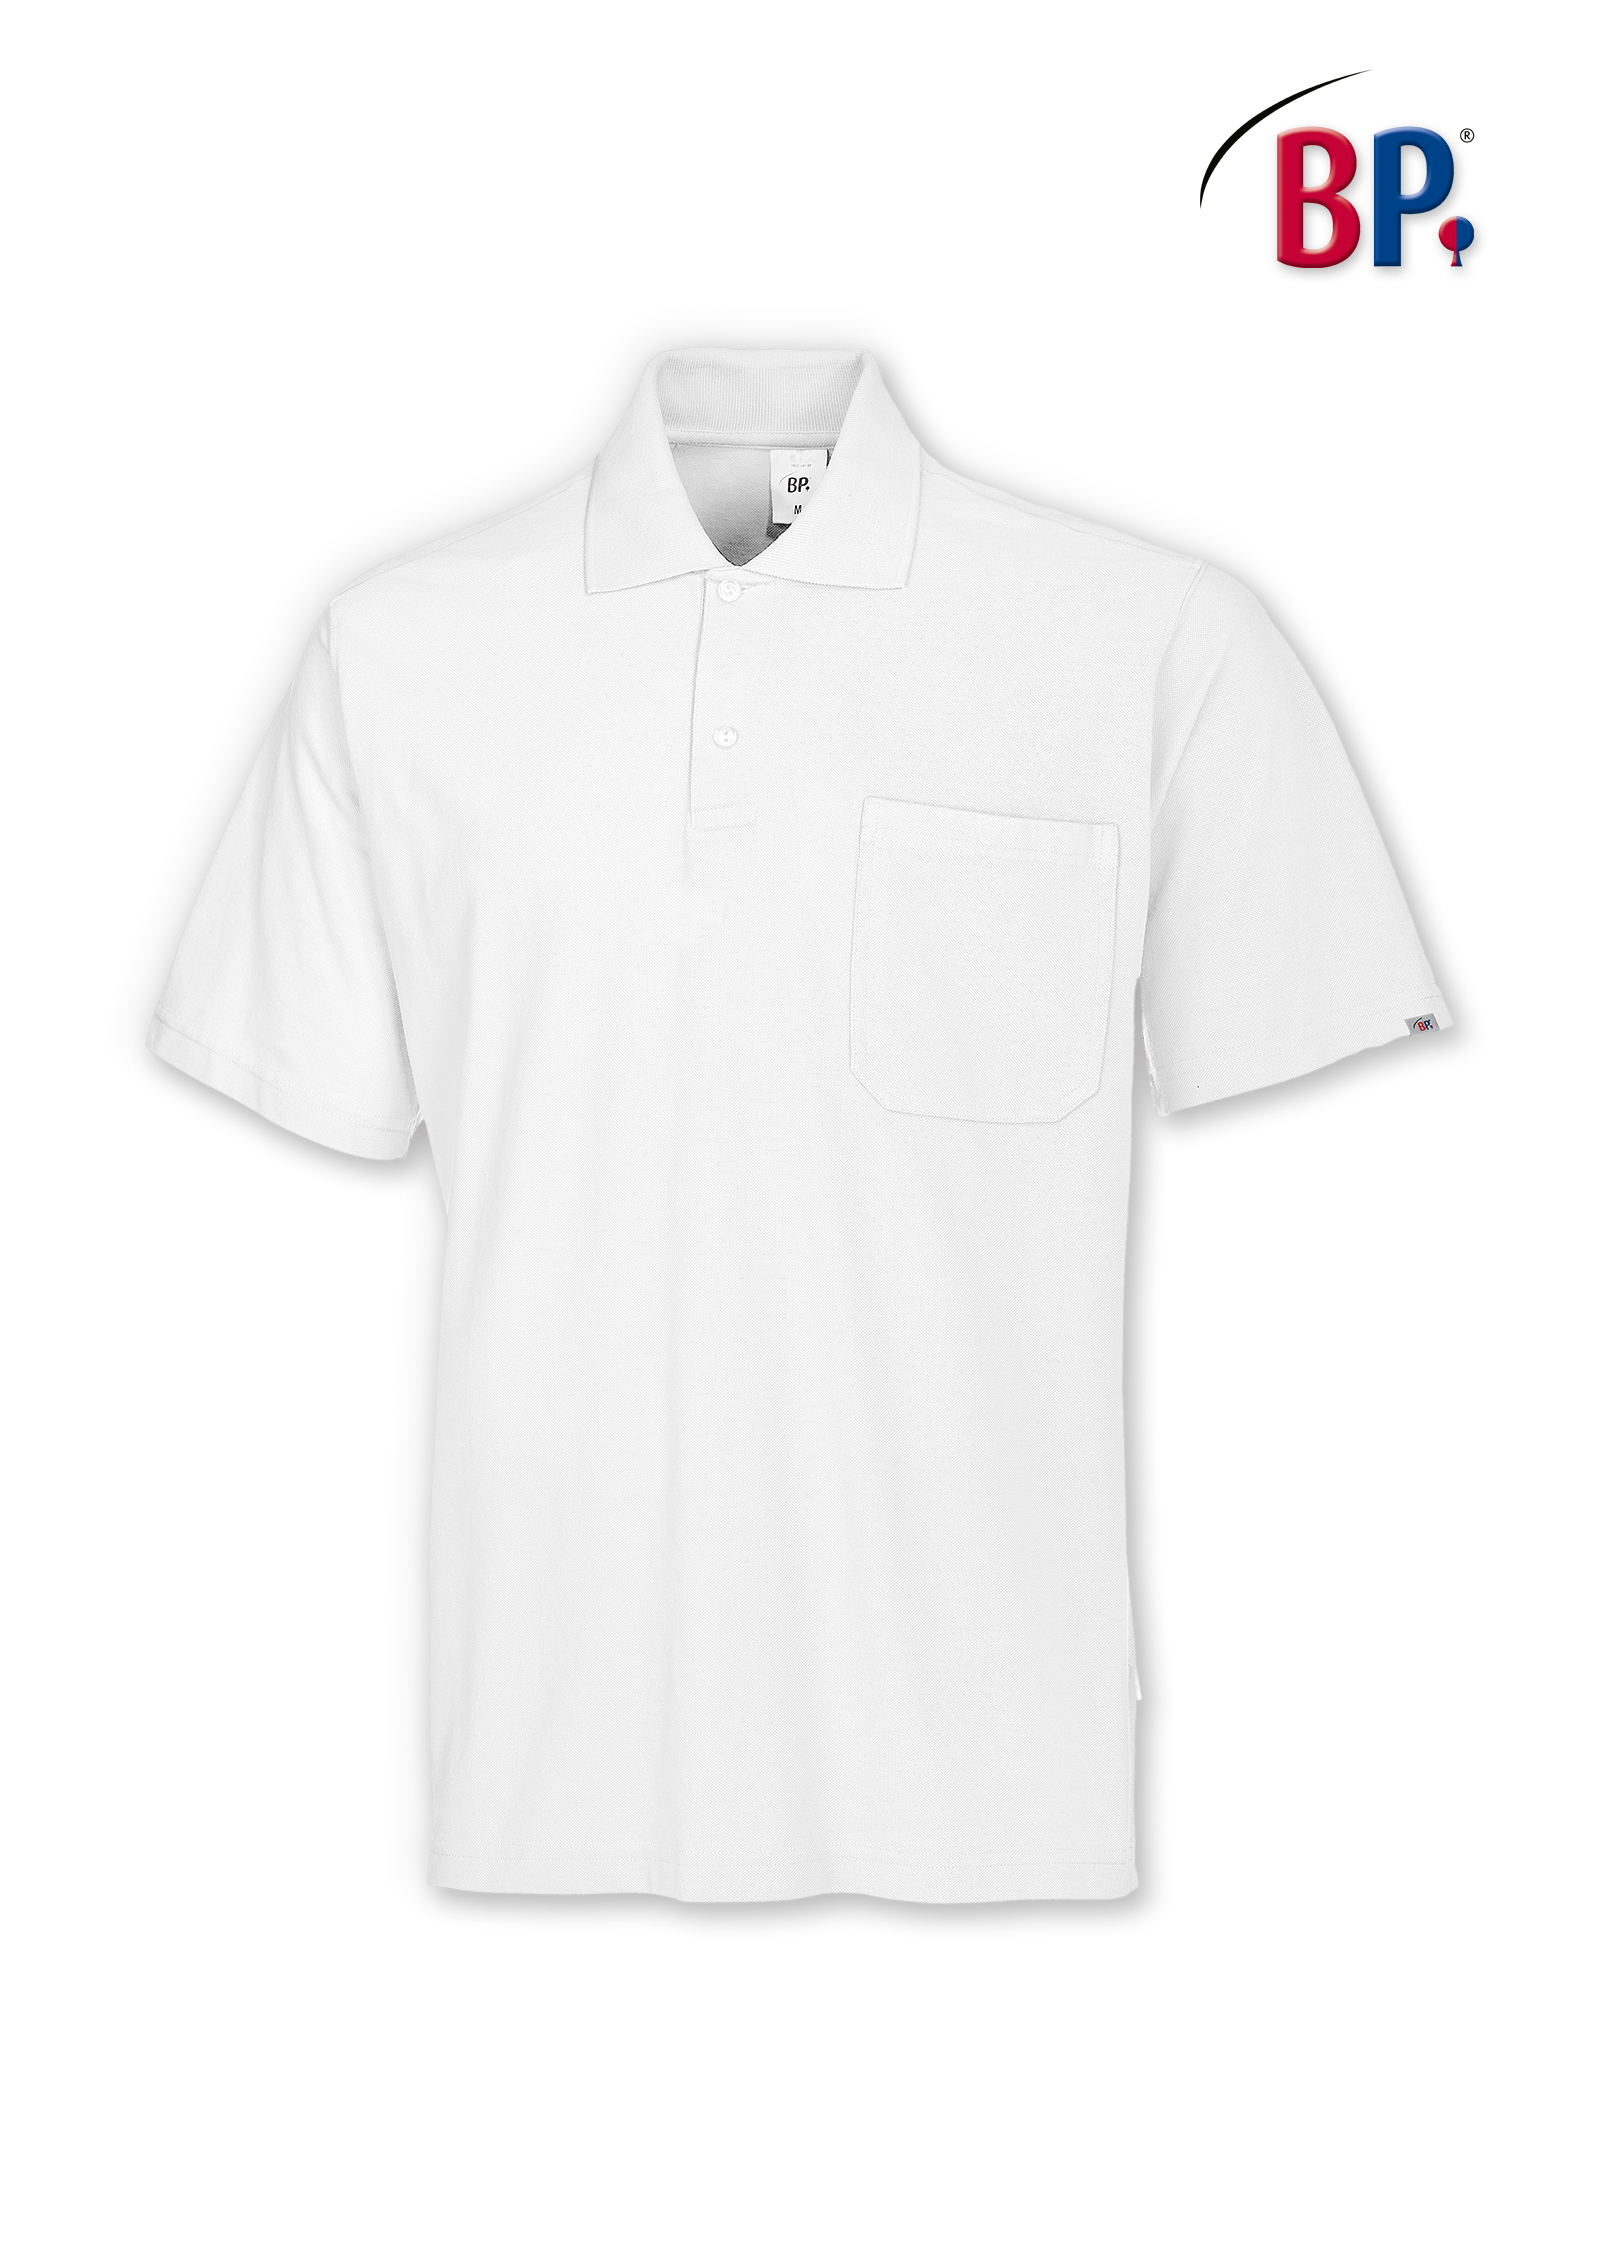 BP® Poloshirt für Sie & Ihn - 1612